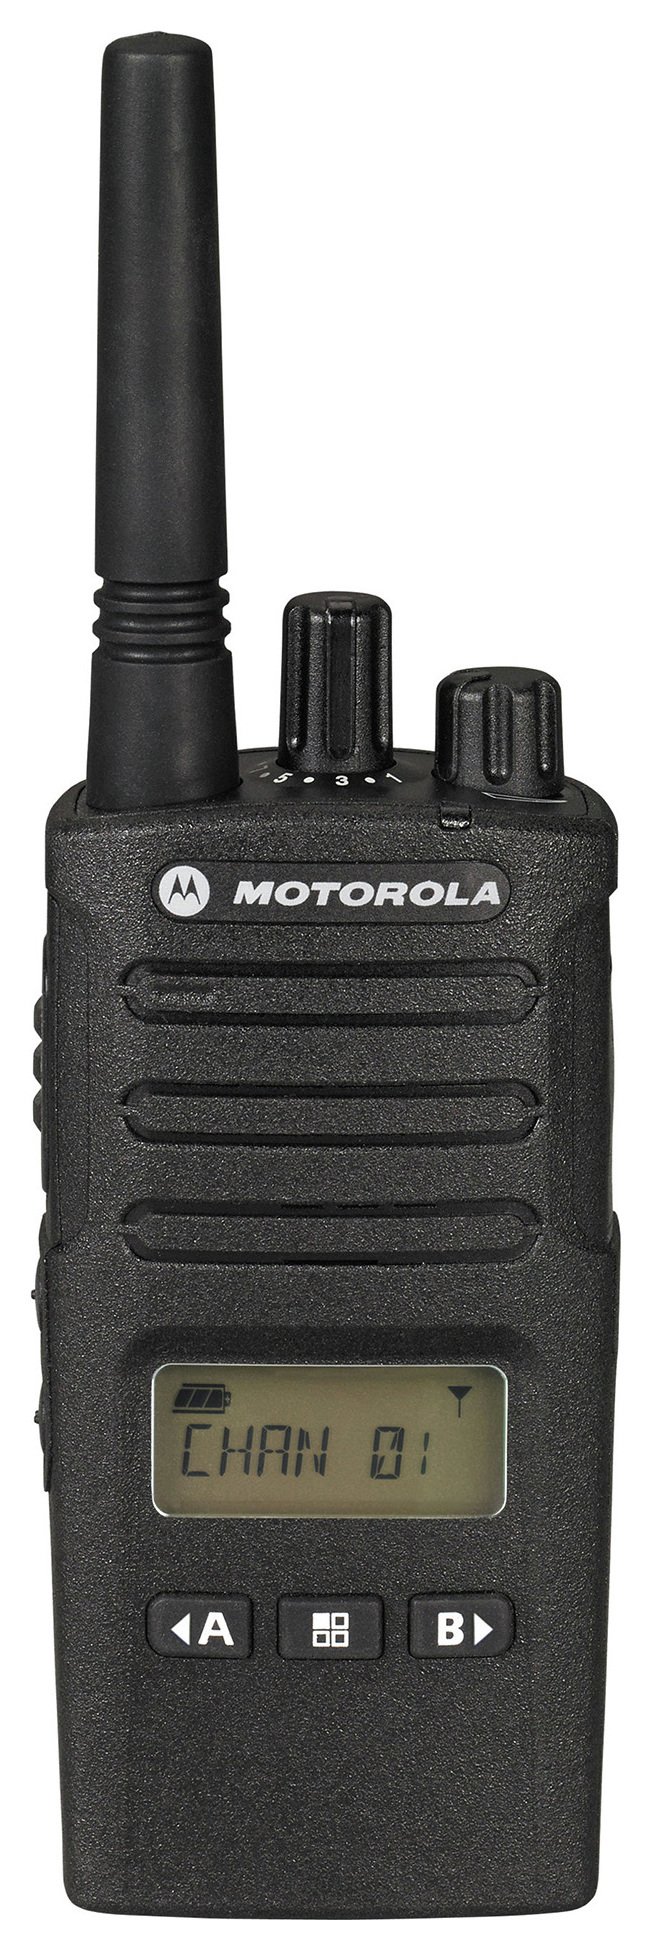 Motorola XT460 2 Way Radio - No Charger